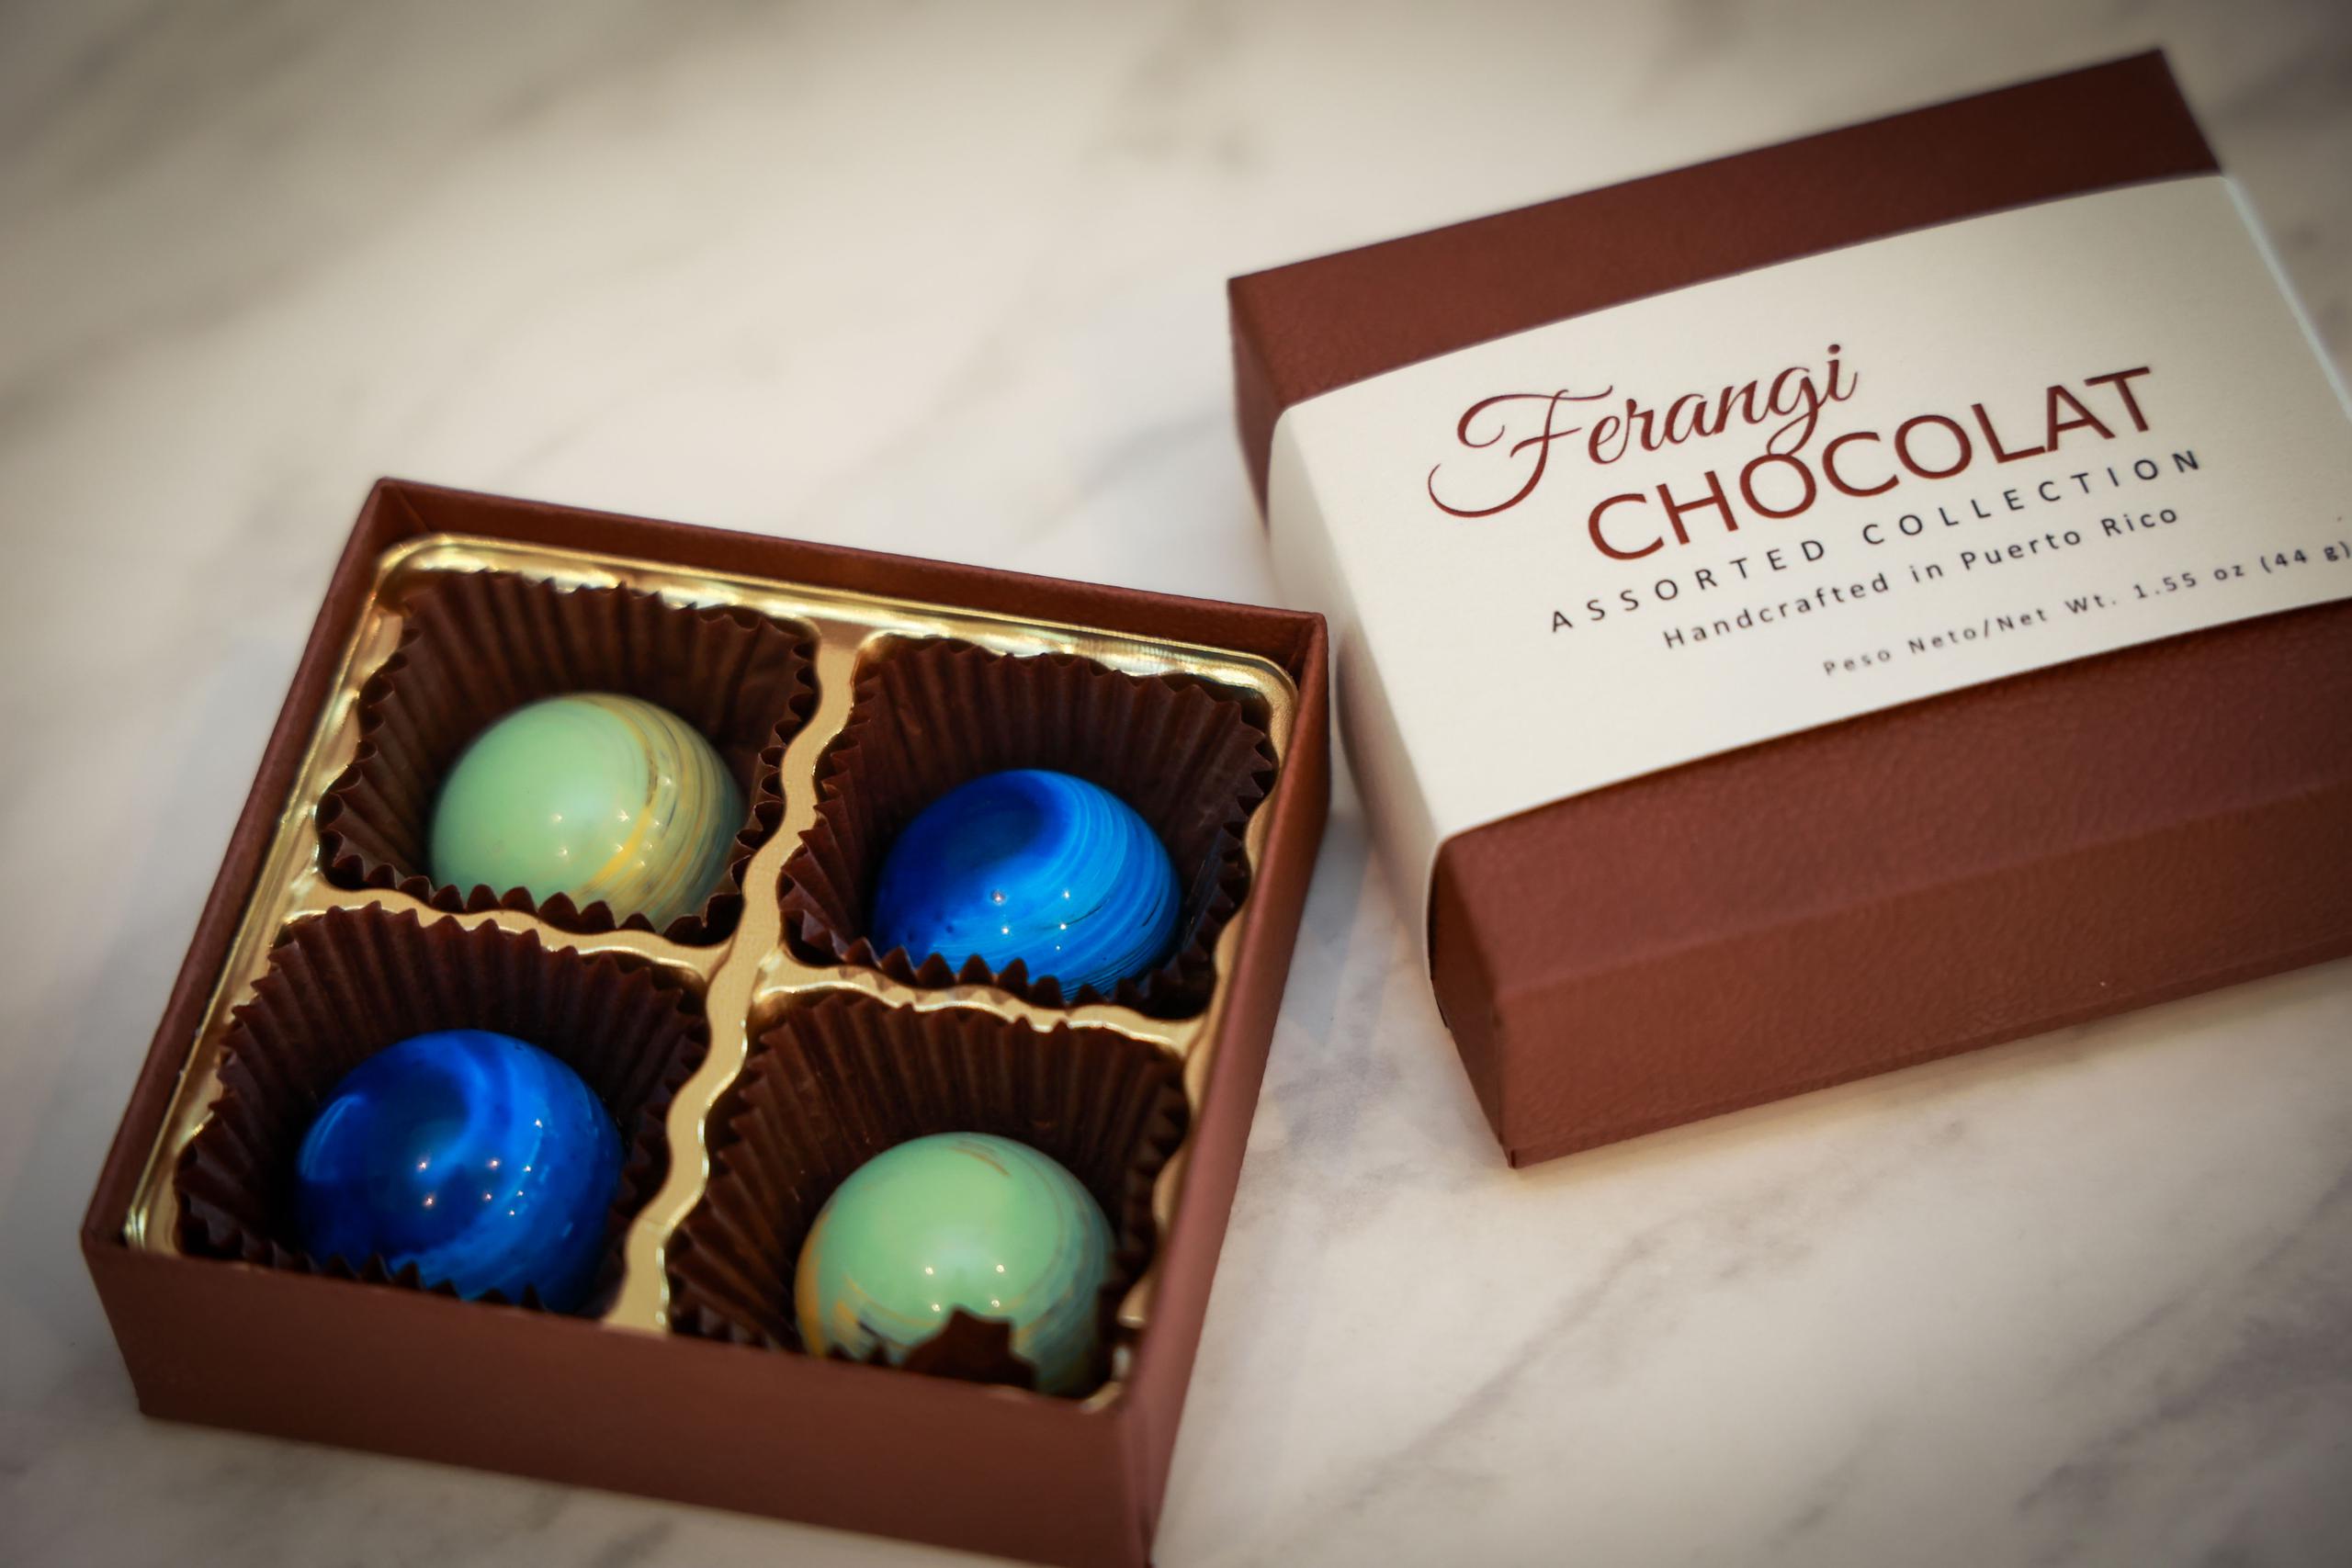 Algunos de los productos de Ferangi Chocolat se exportan a Estados Unidos y gozan de gran prestigio por su calidad.